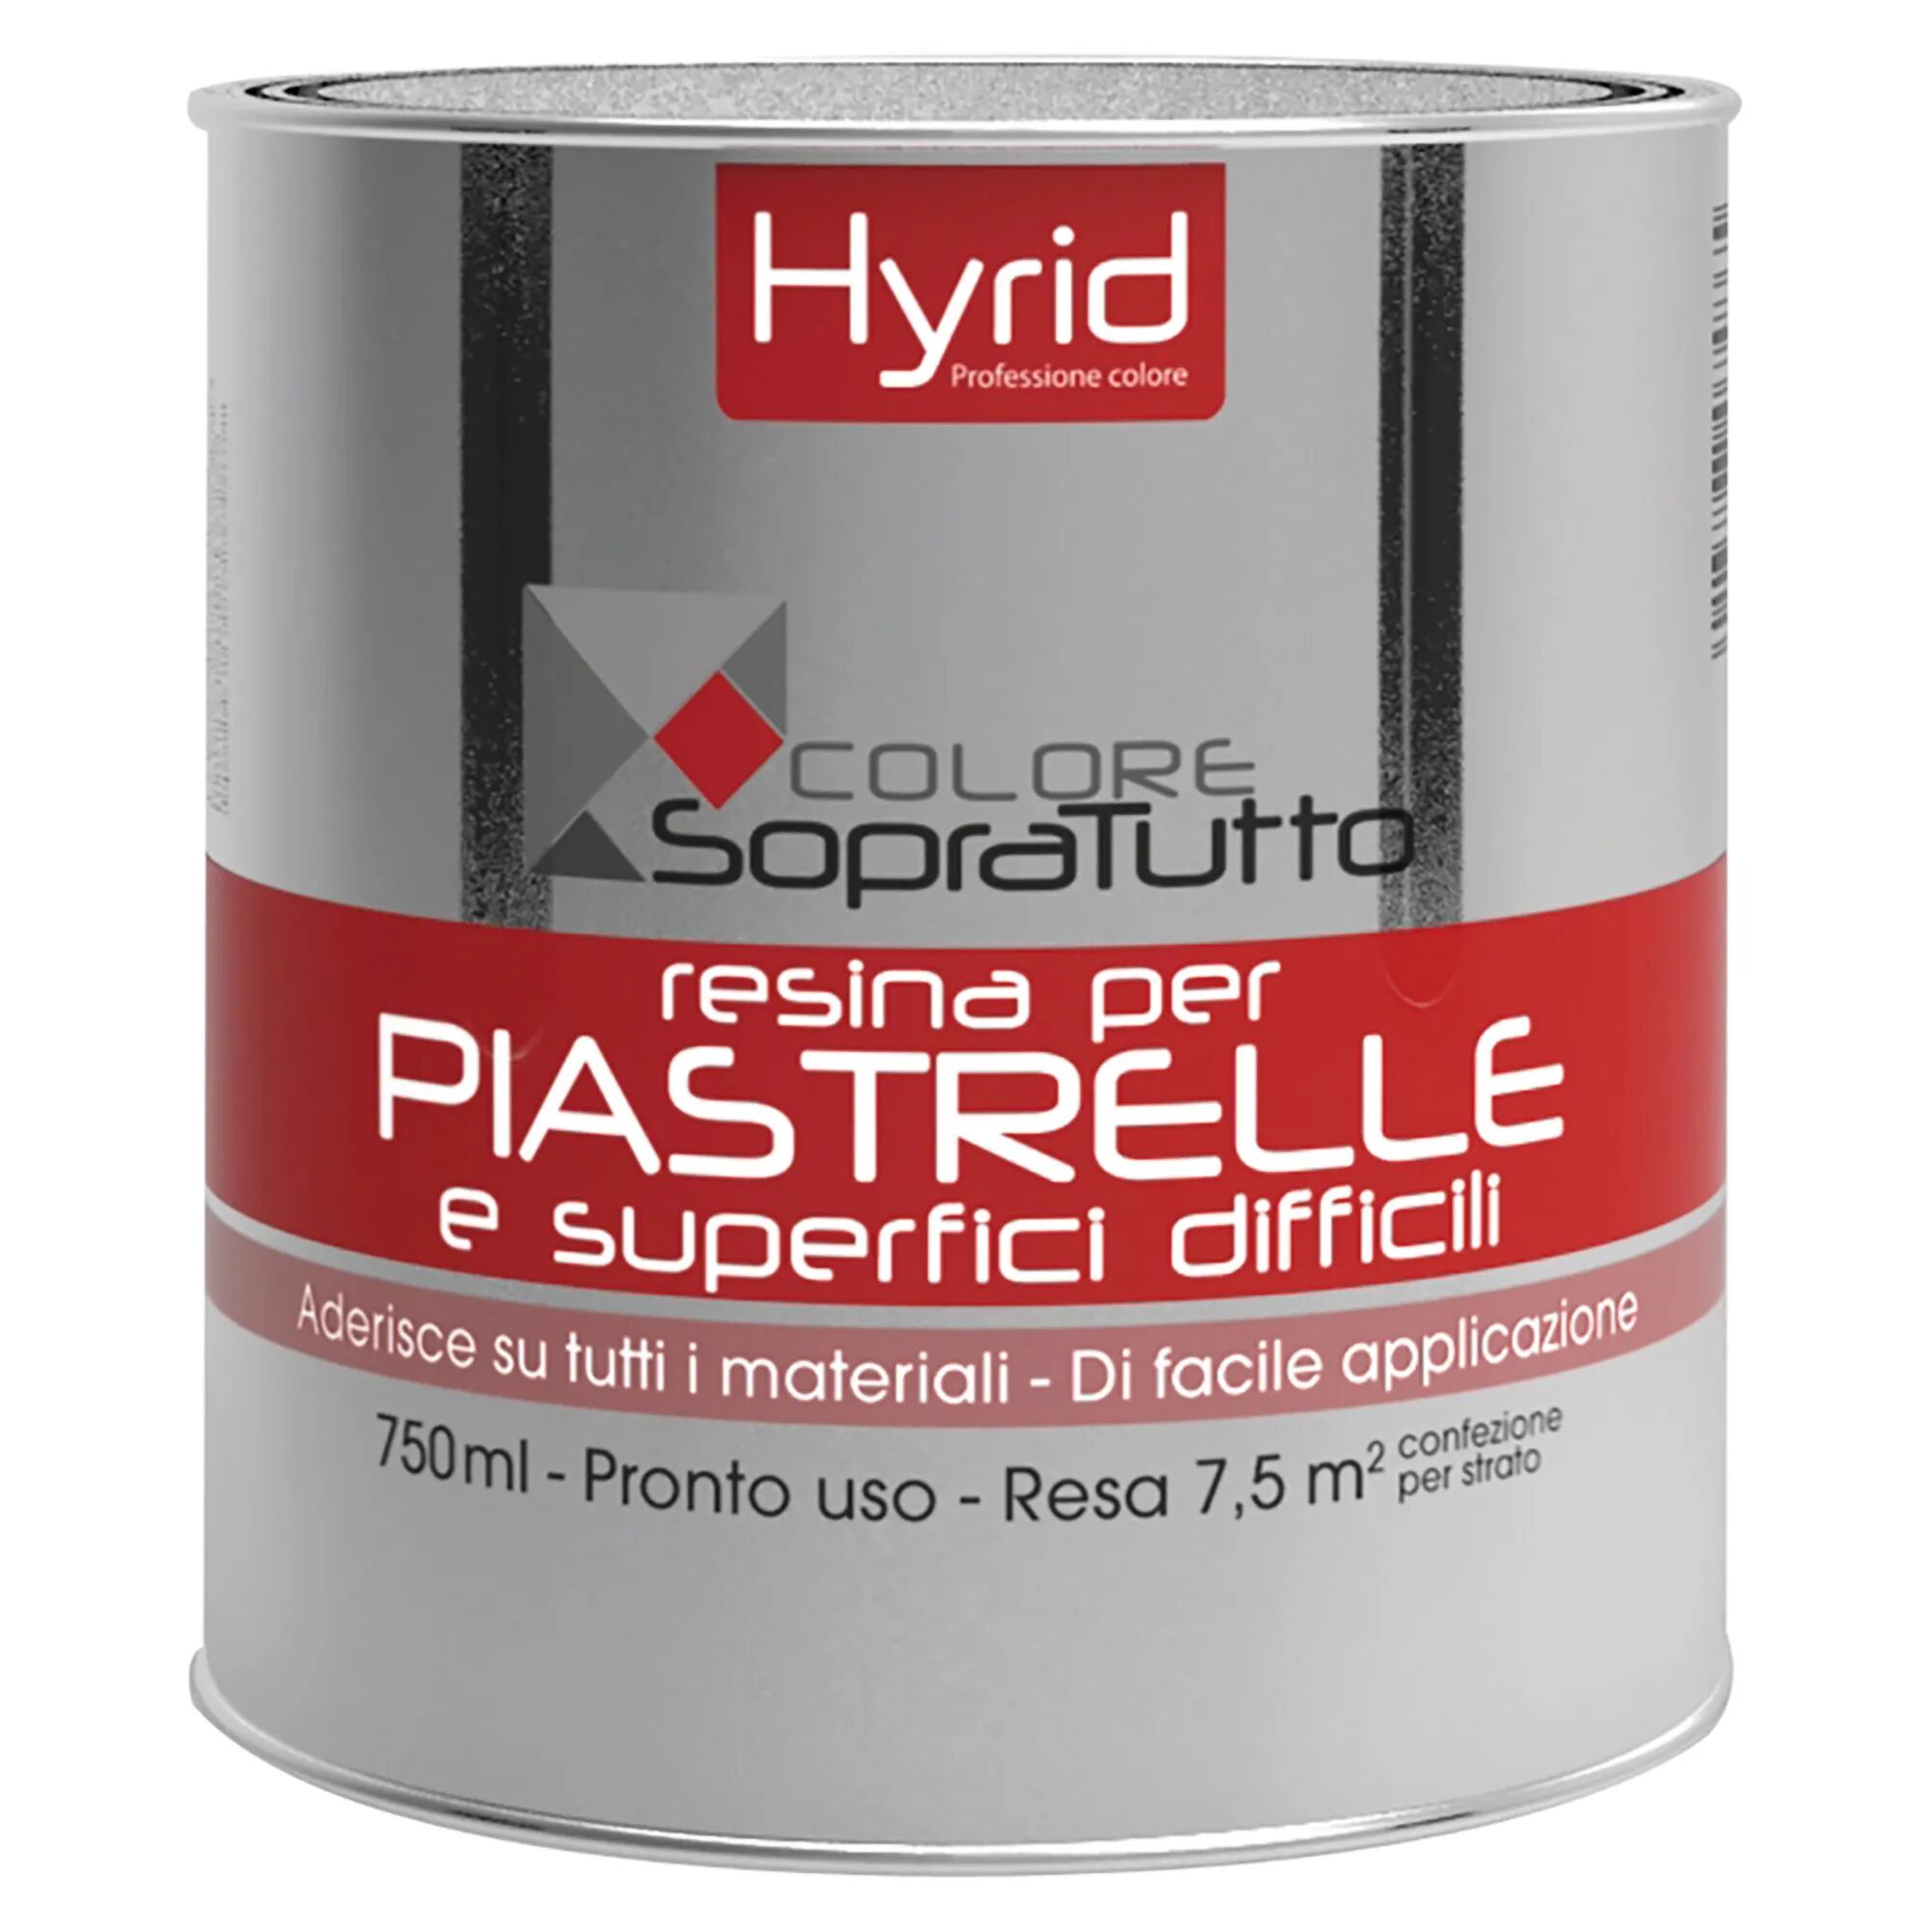 hyrid by covema resina piastrelle hyrid malachite 750 ml per superfici difficili 10 m²  con 1 l pronto uso